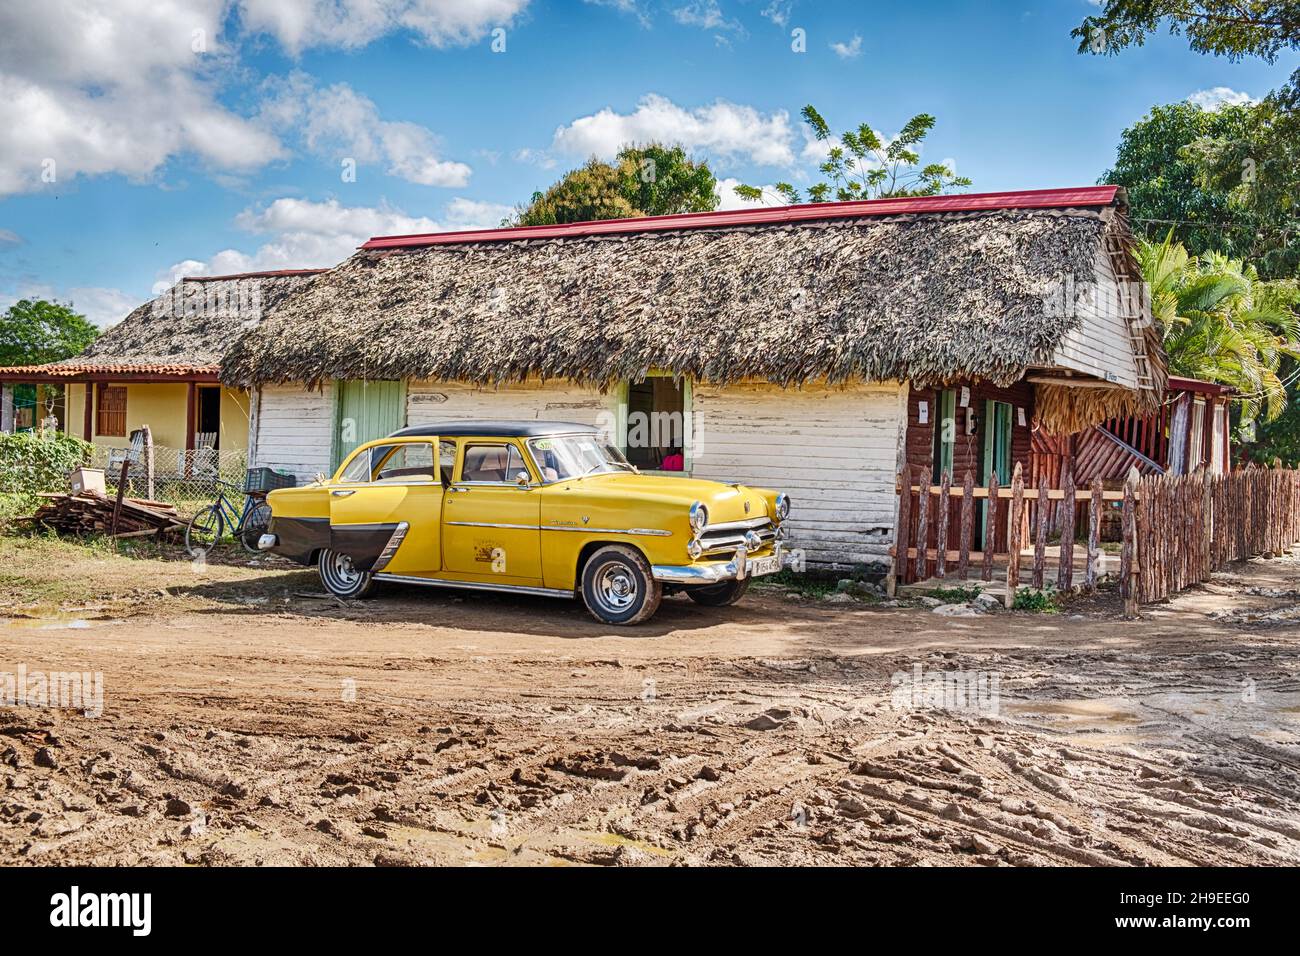 Une voiture jaune d'époque jaune d'Amérique travaillant comme un taxi attend pour un trajet devant un restaurant cubain local dans la ville de Vinales. Banque D'Images